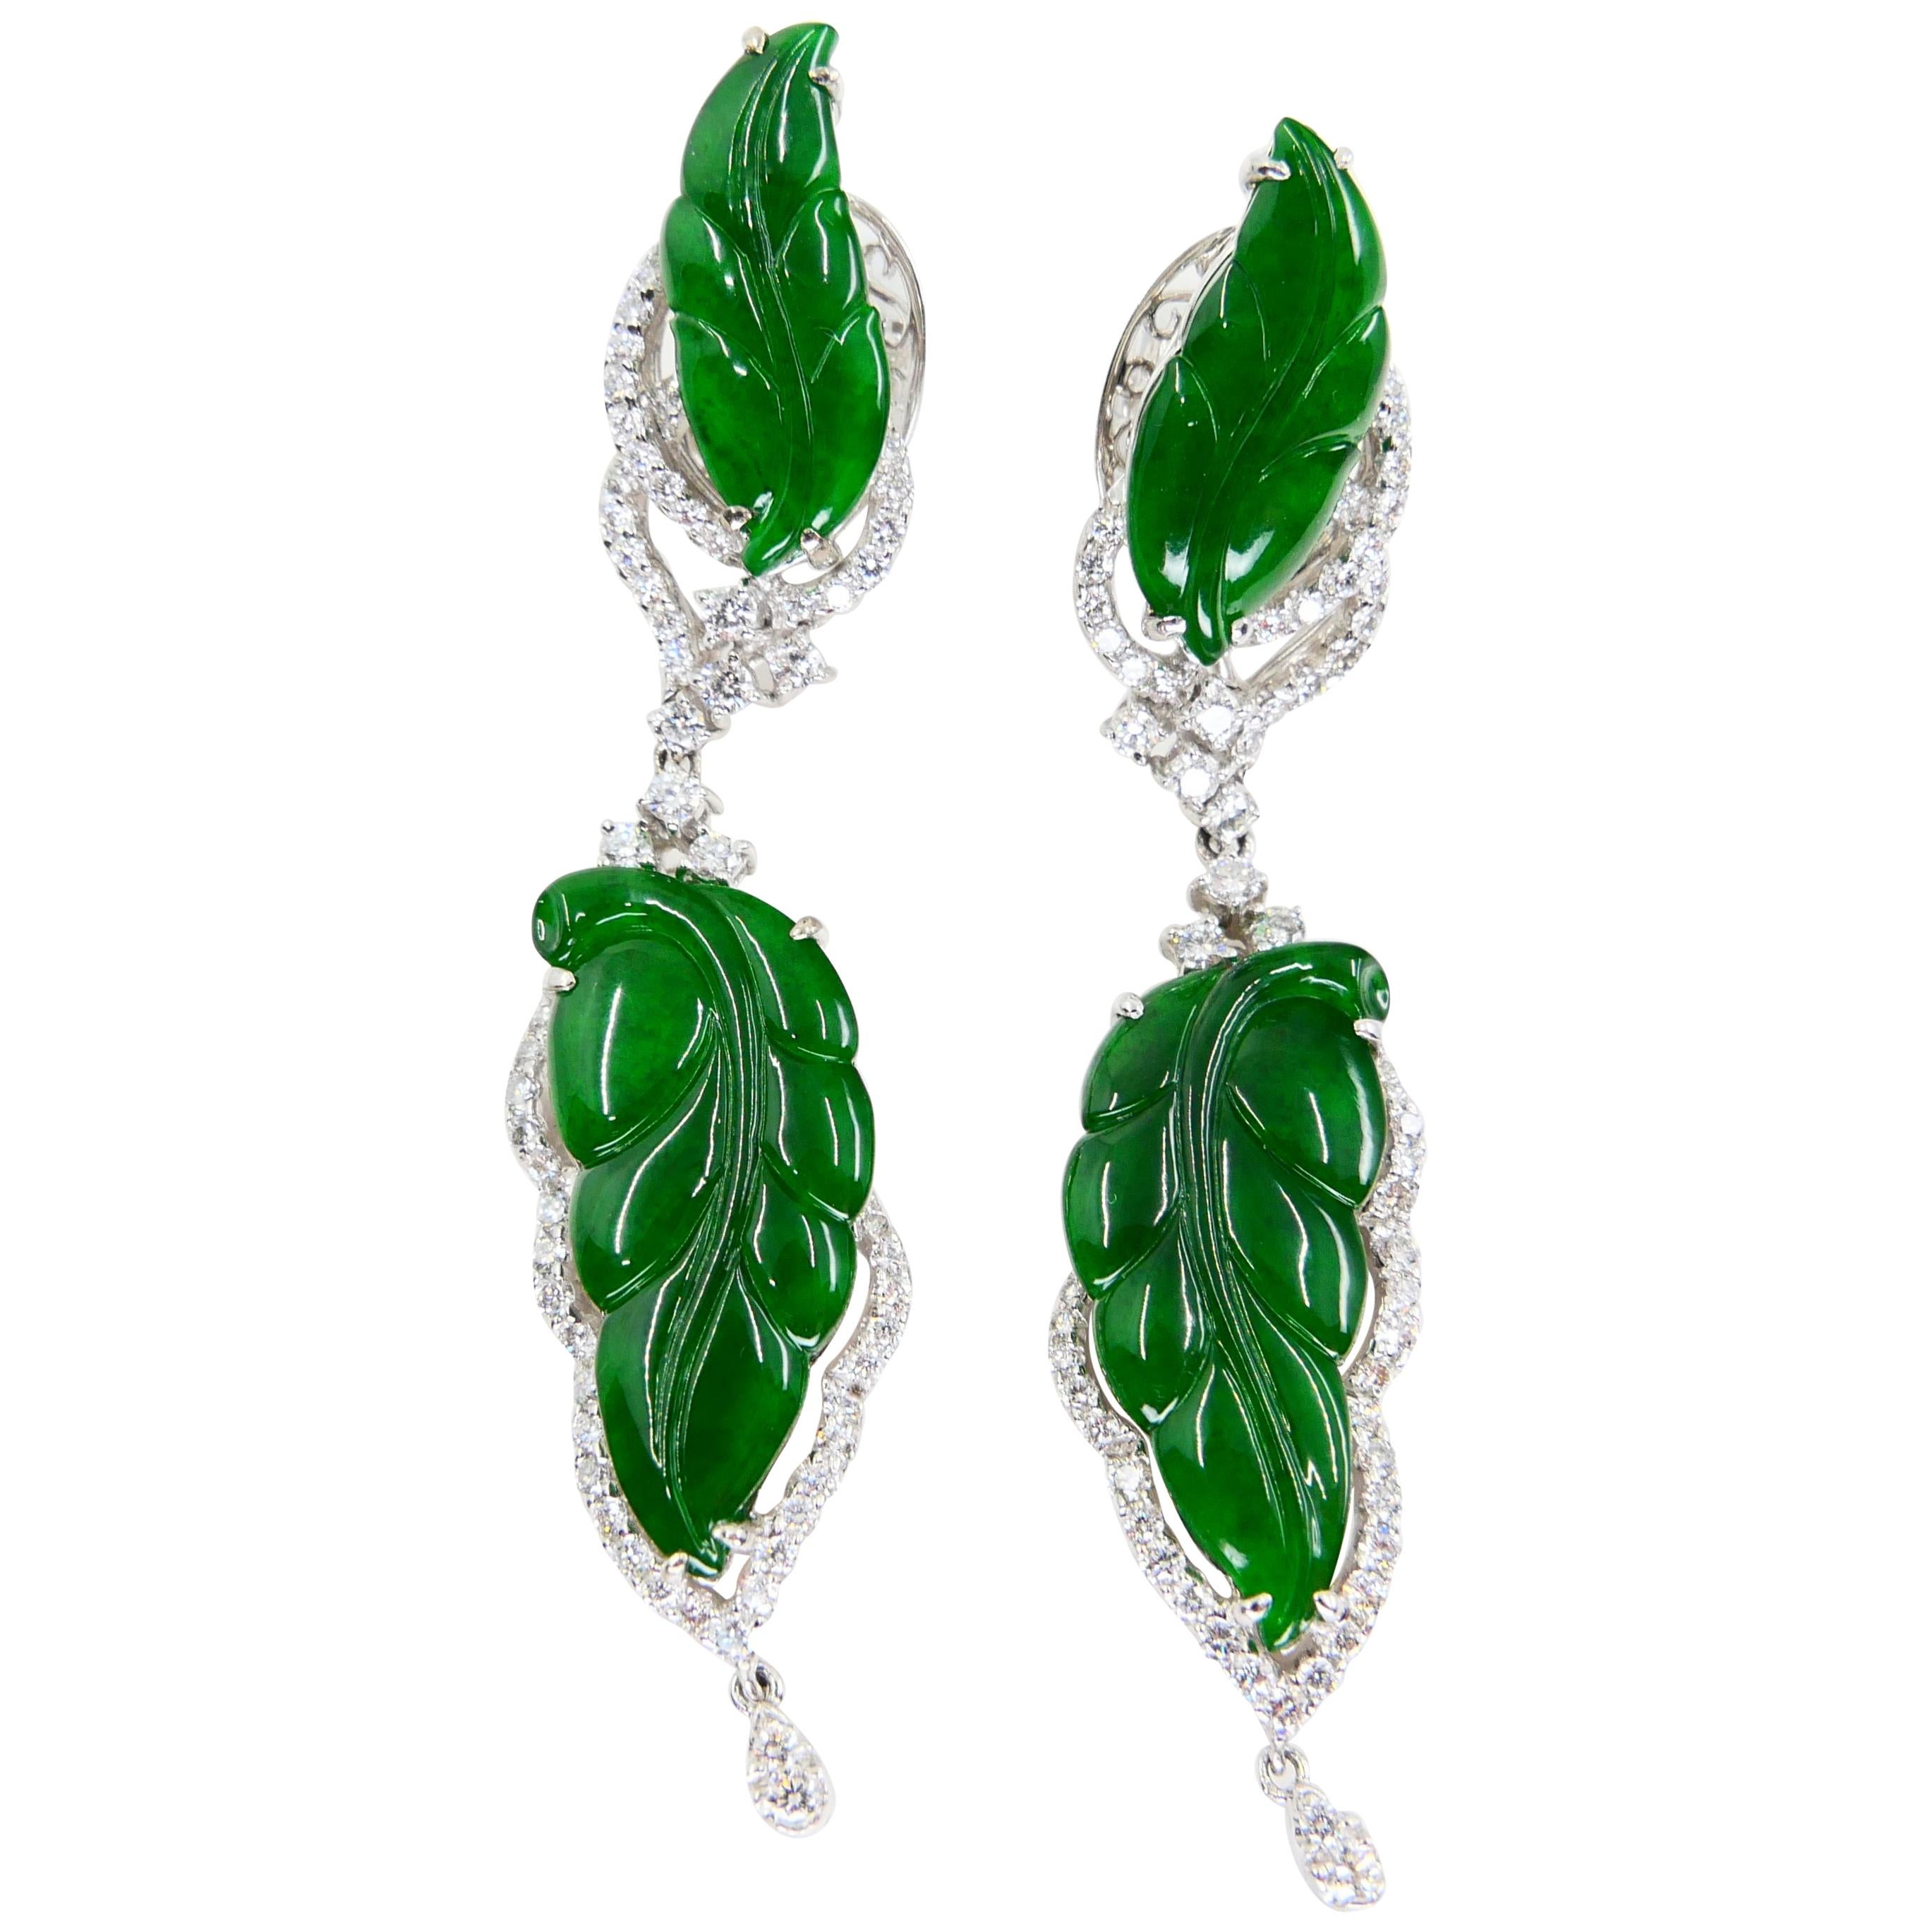 Vintage Certified Jadeite Jade and Diamond Drop Earrings, Intense Imperial Green 4